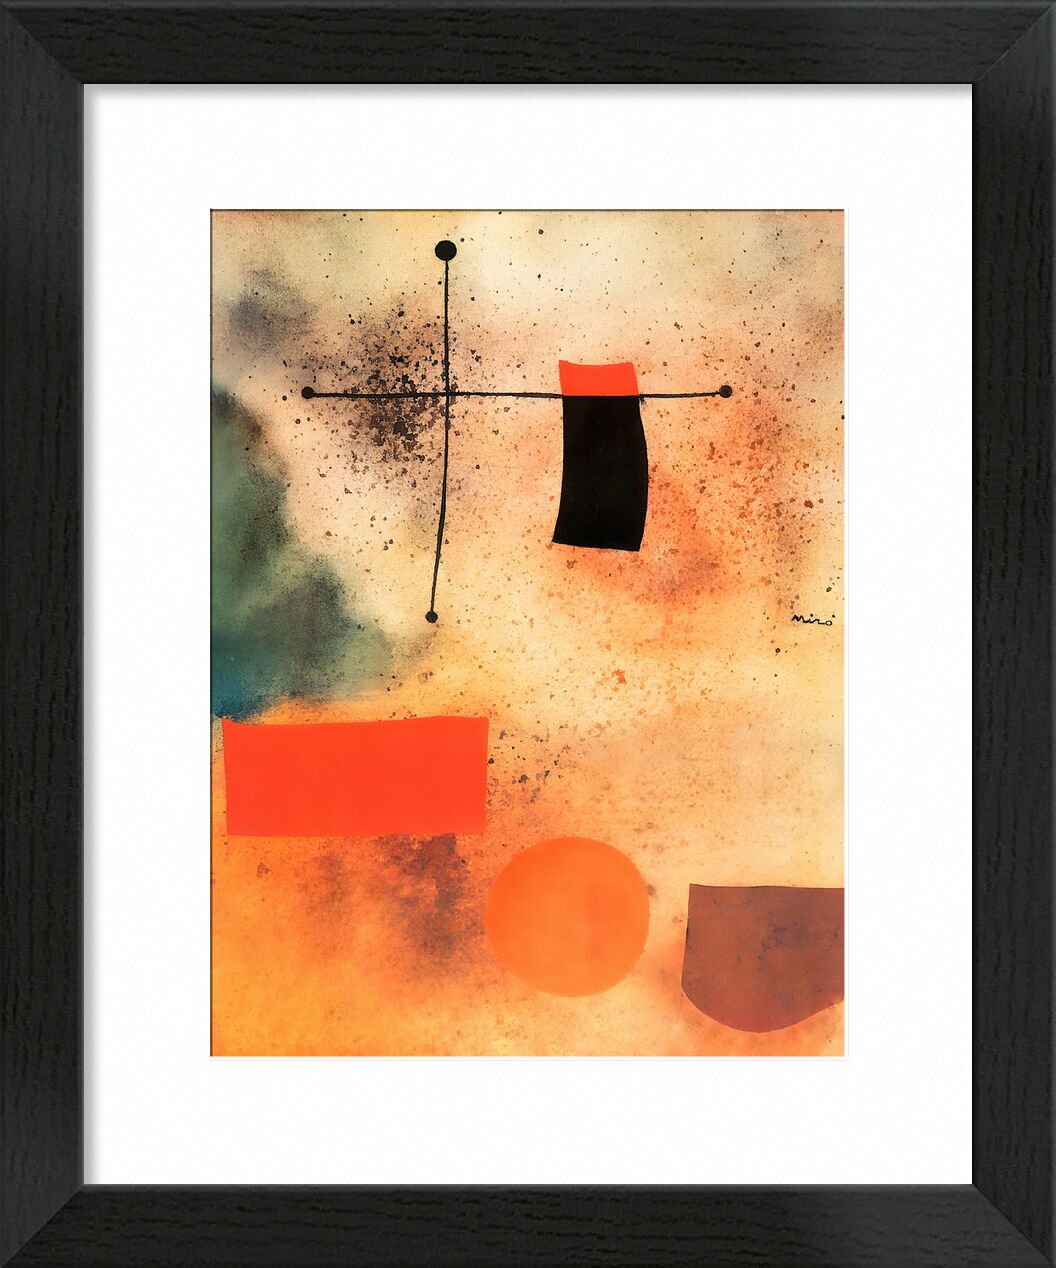 Abstract, c.1935 - Joan Miró desde Bellas artes, Prodi Art, Joan Miró, abstracto, dibujo, cruzar, playa